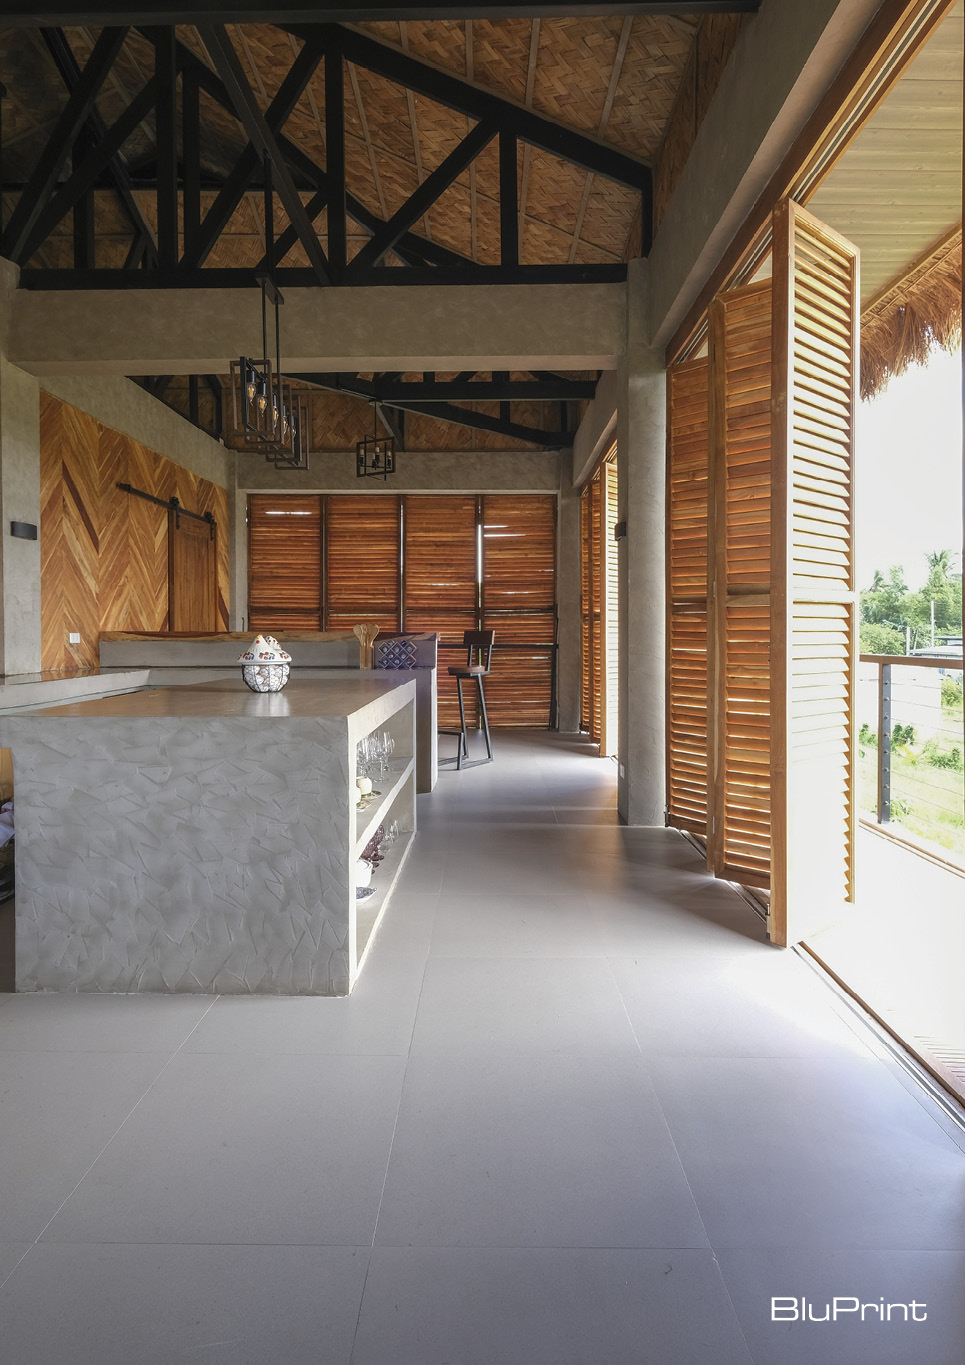 Contemporary bahay kubo or nipa hut interior shot - kitchen